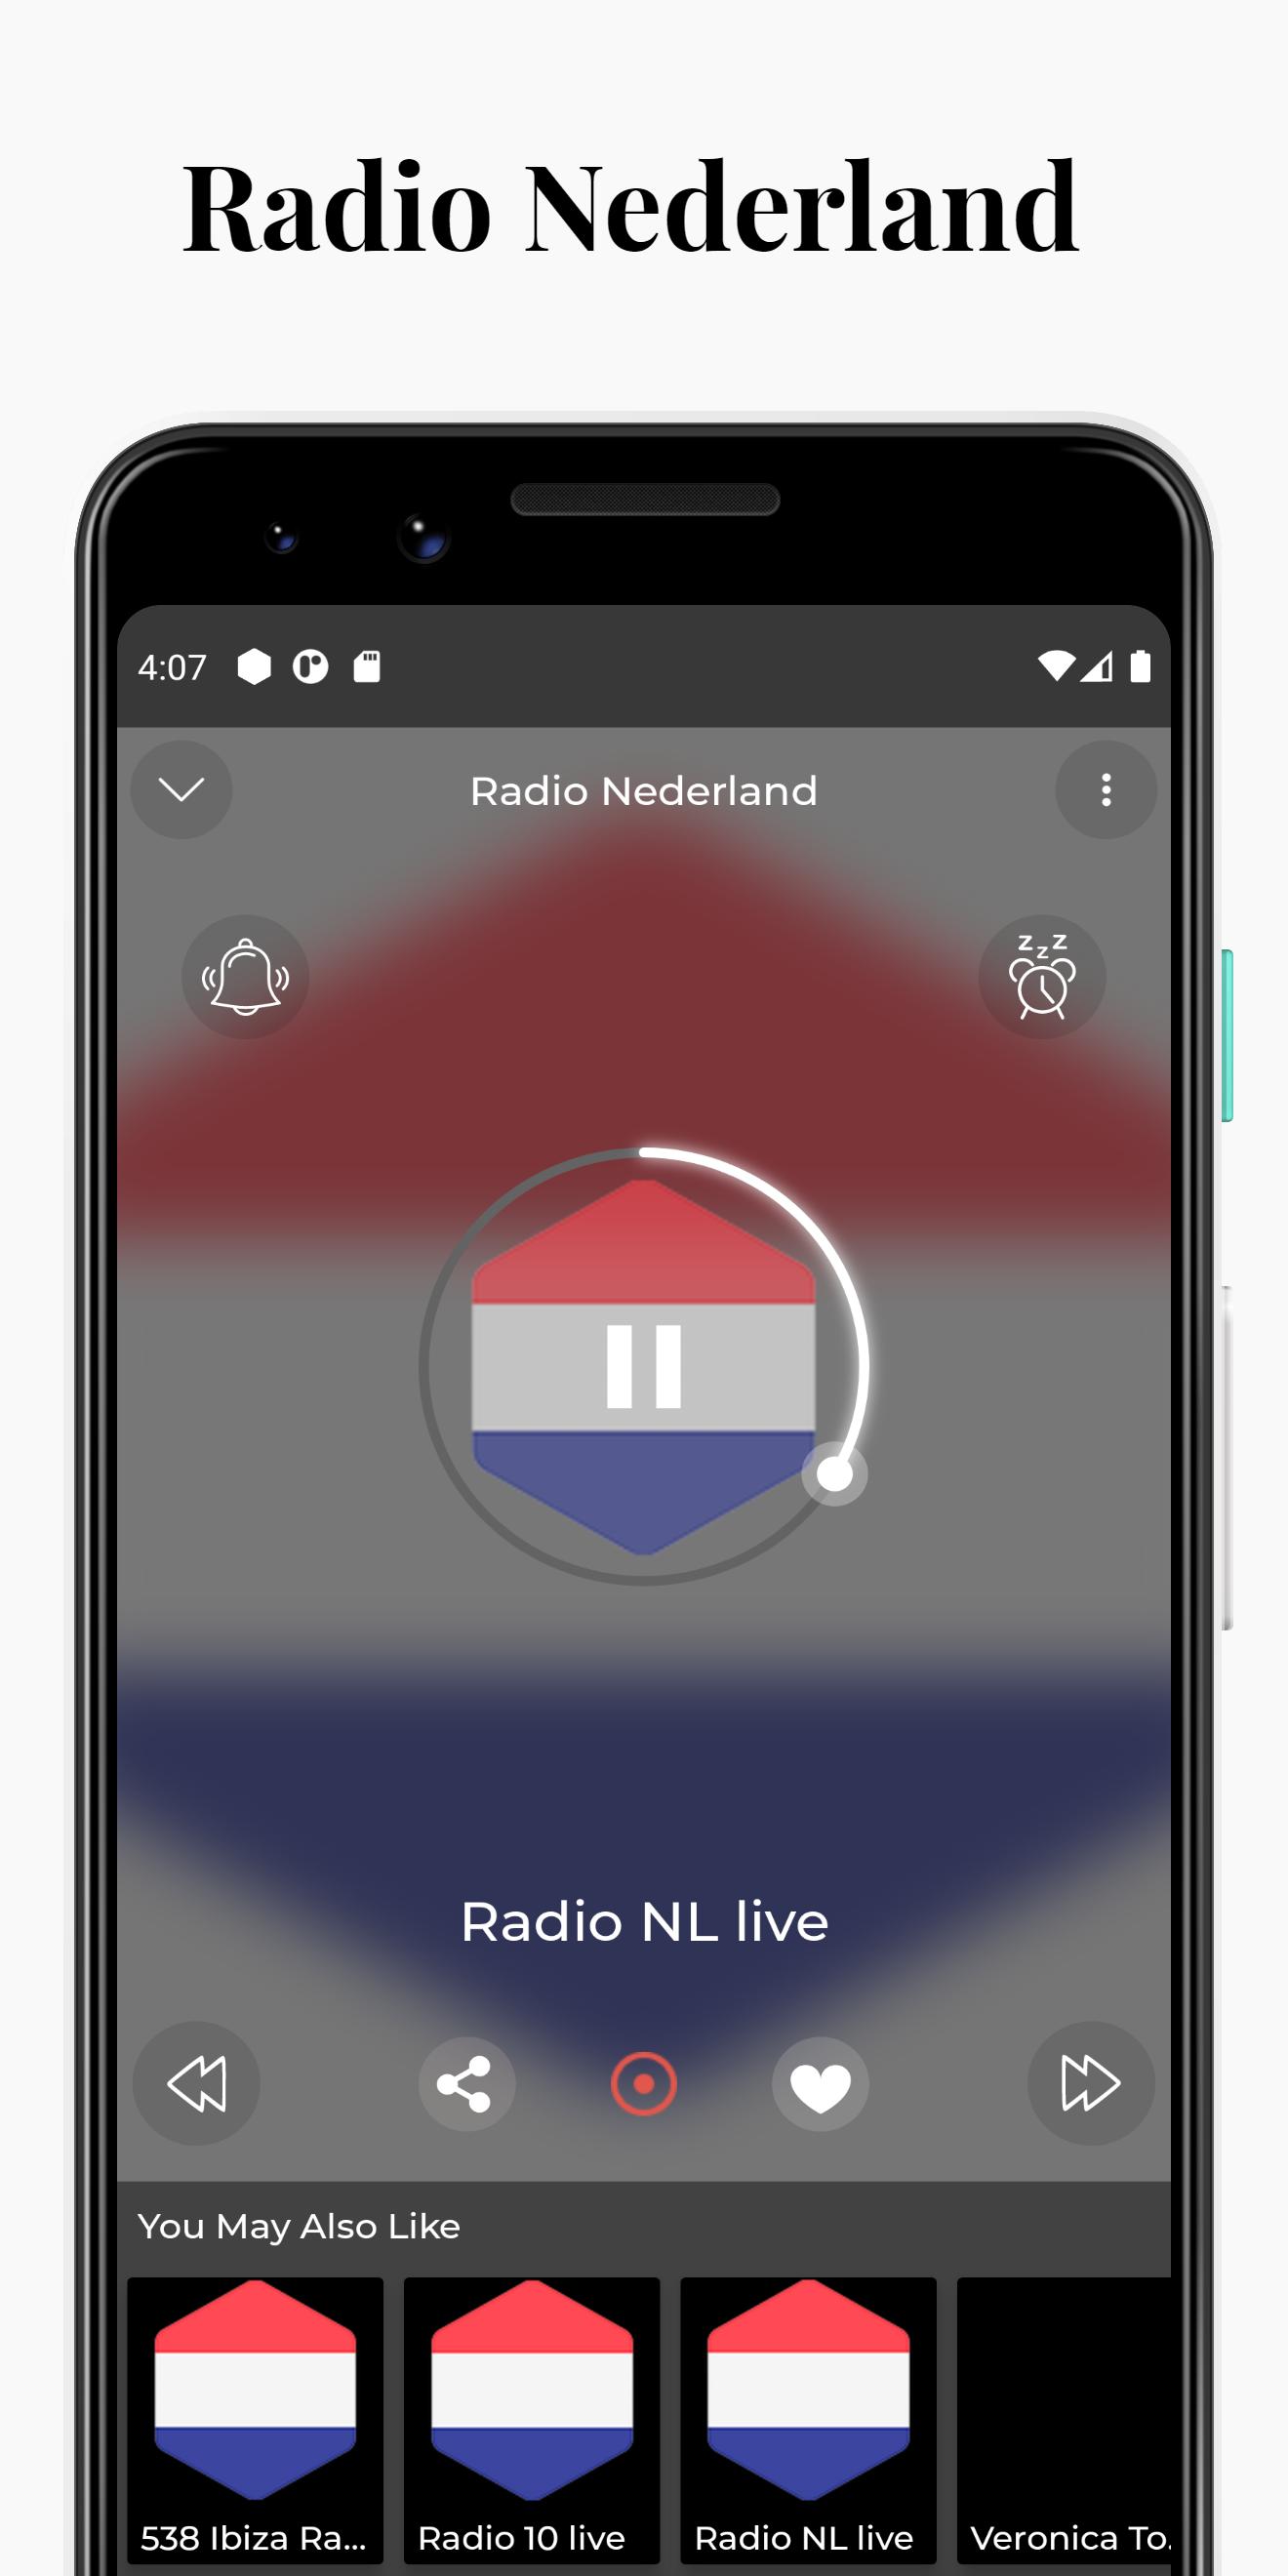 Soul Radio Nederlandse radio for Android - APK Download